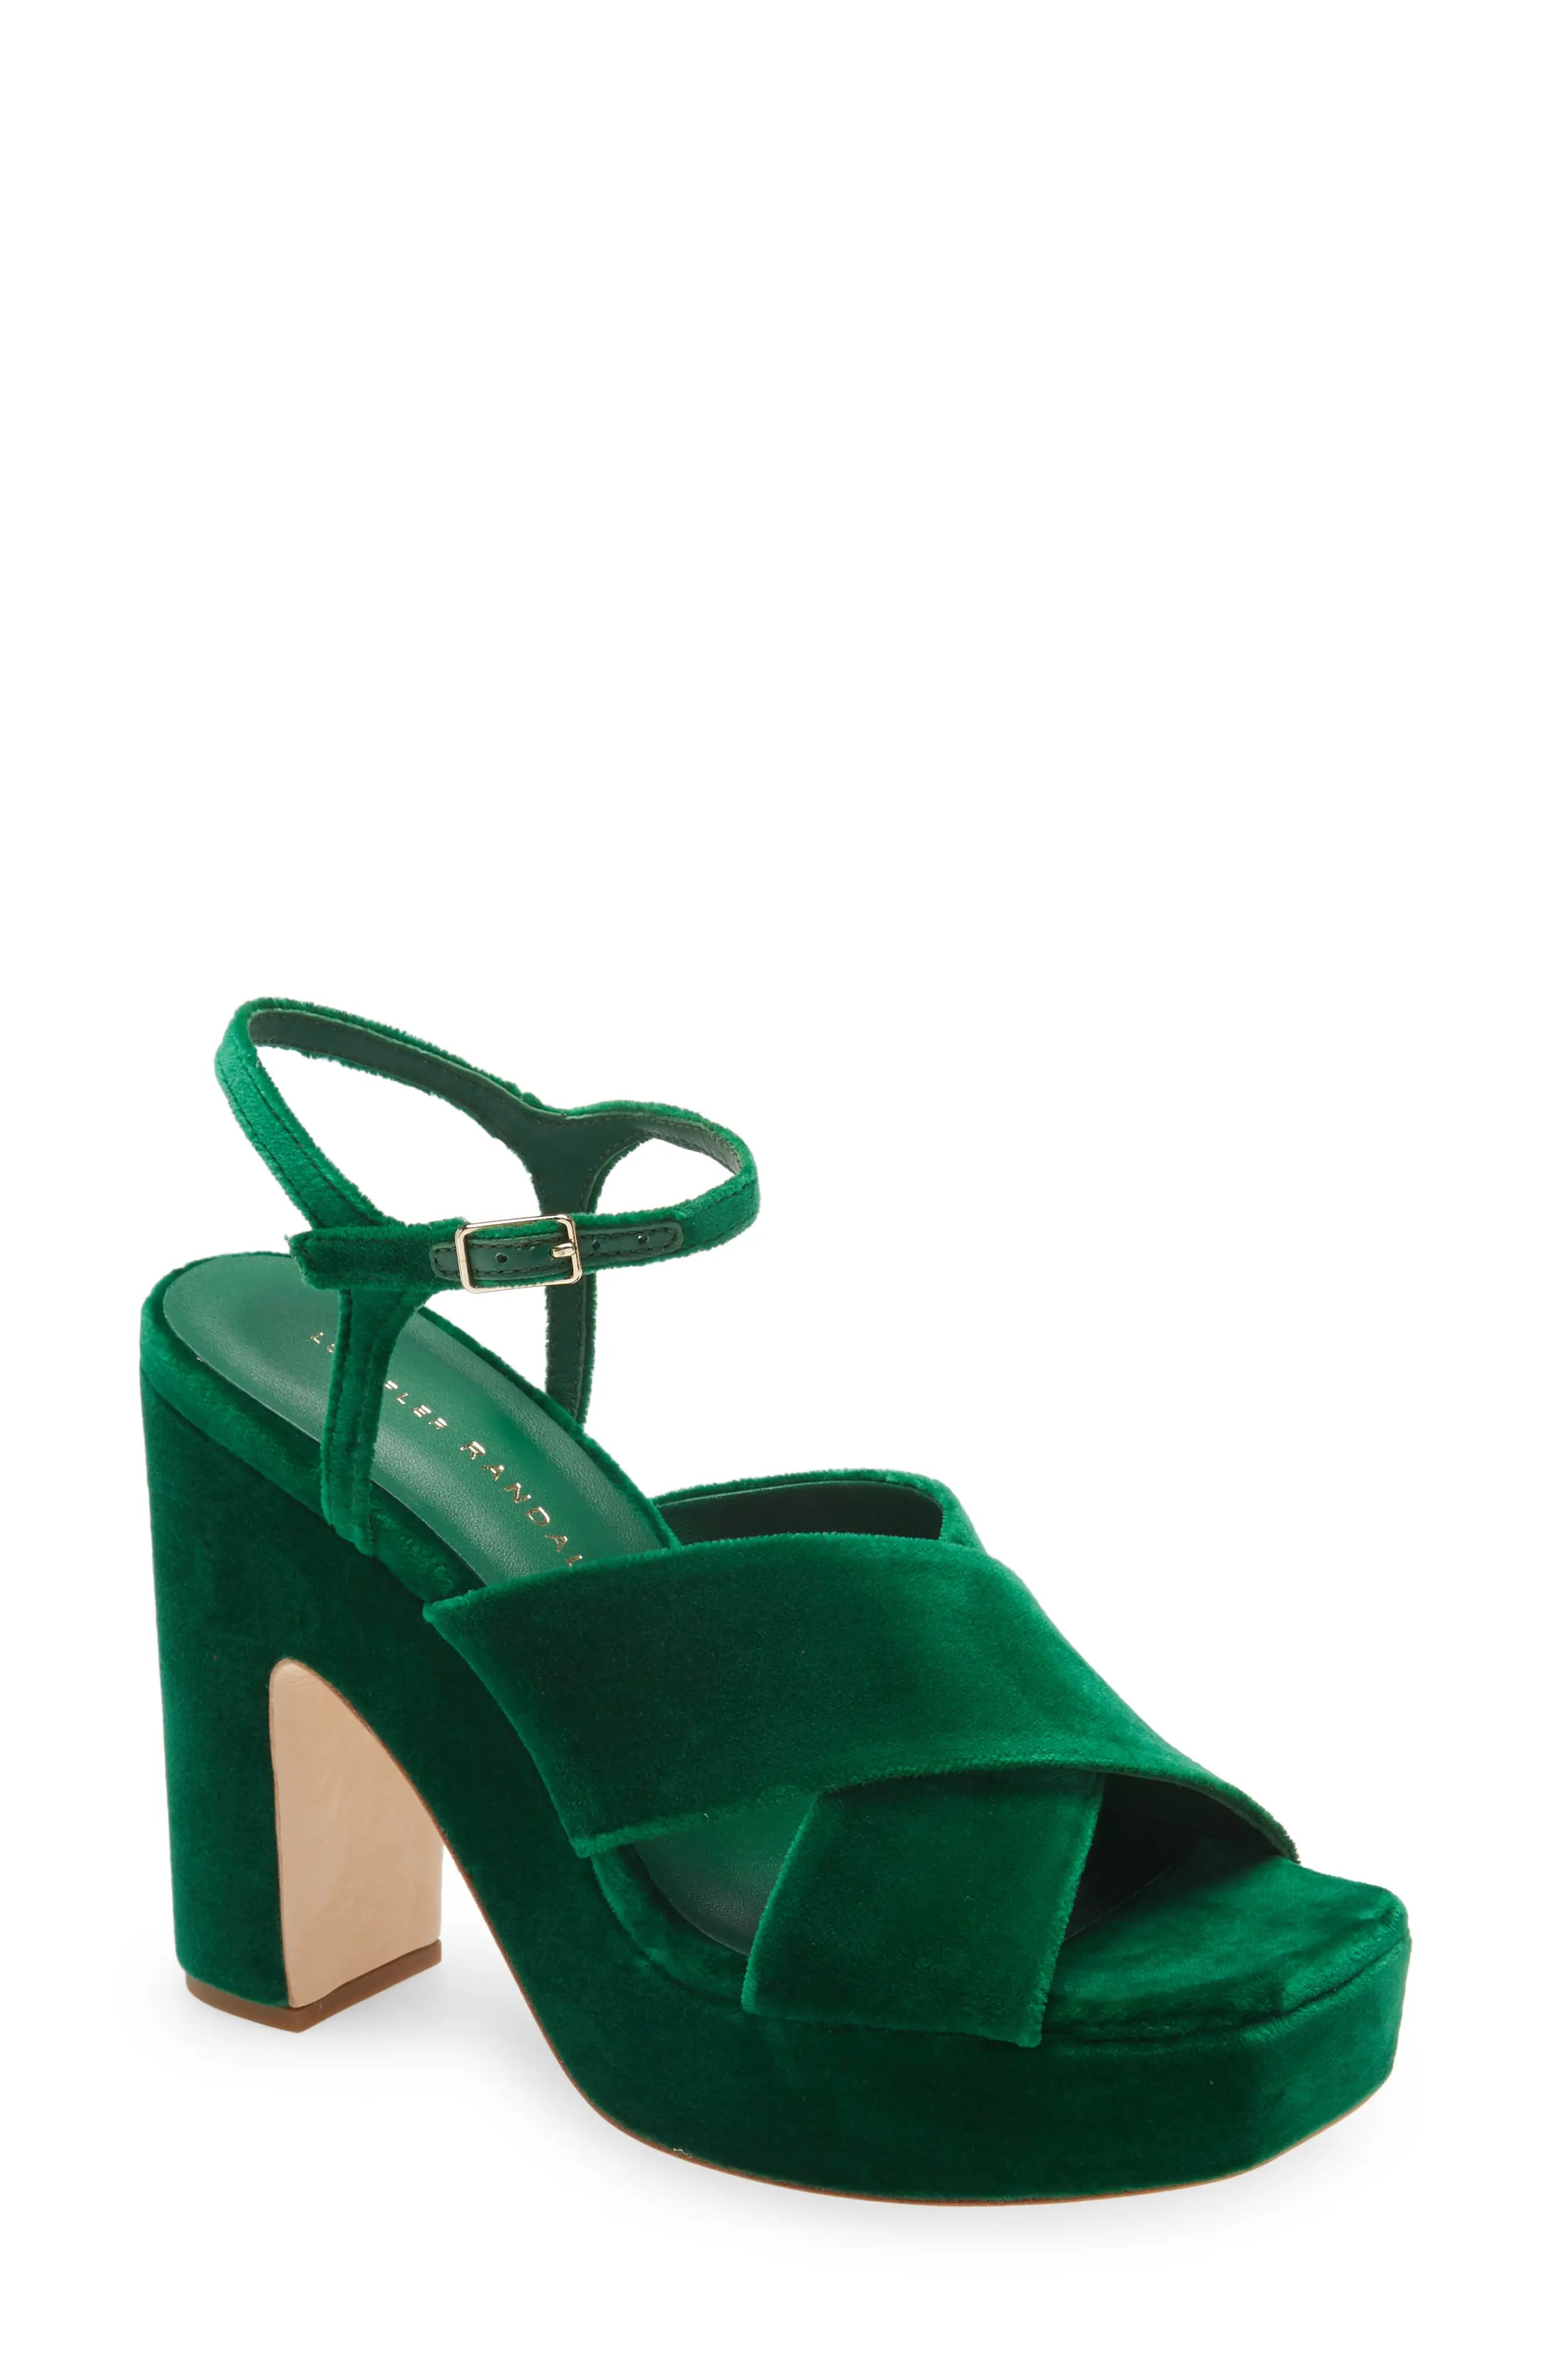 Loeffler Randall Gina Platform Sandal, Size 5 in Emerald at Nordstrom | Nordstrom